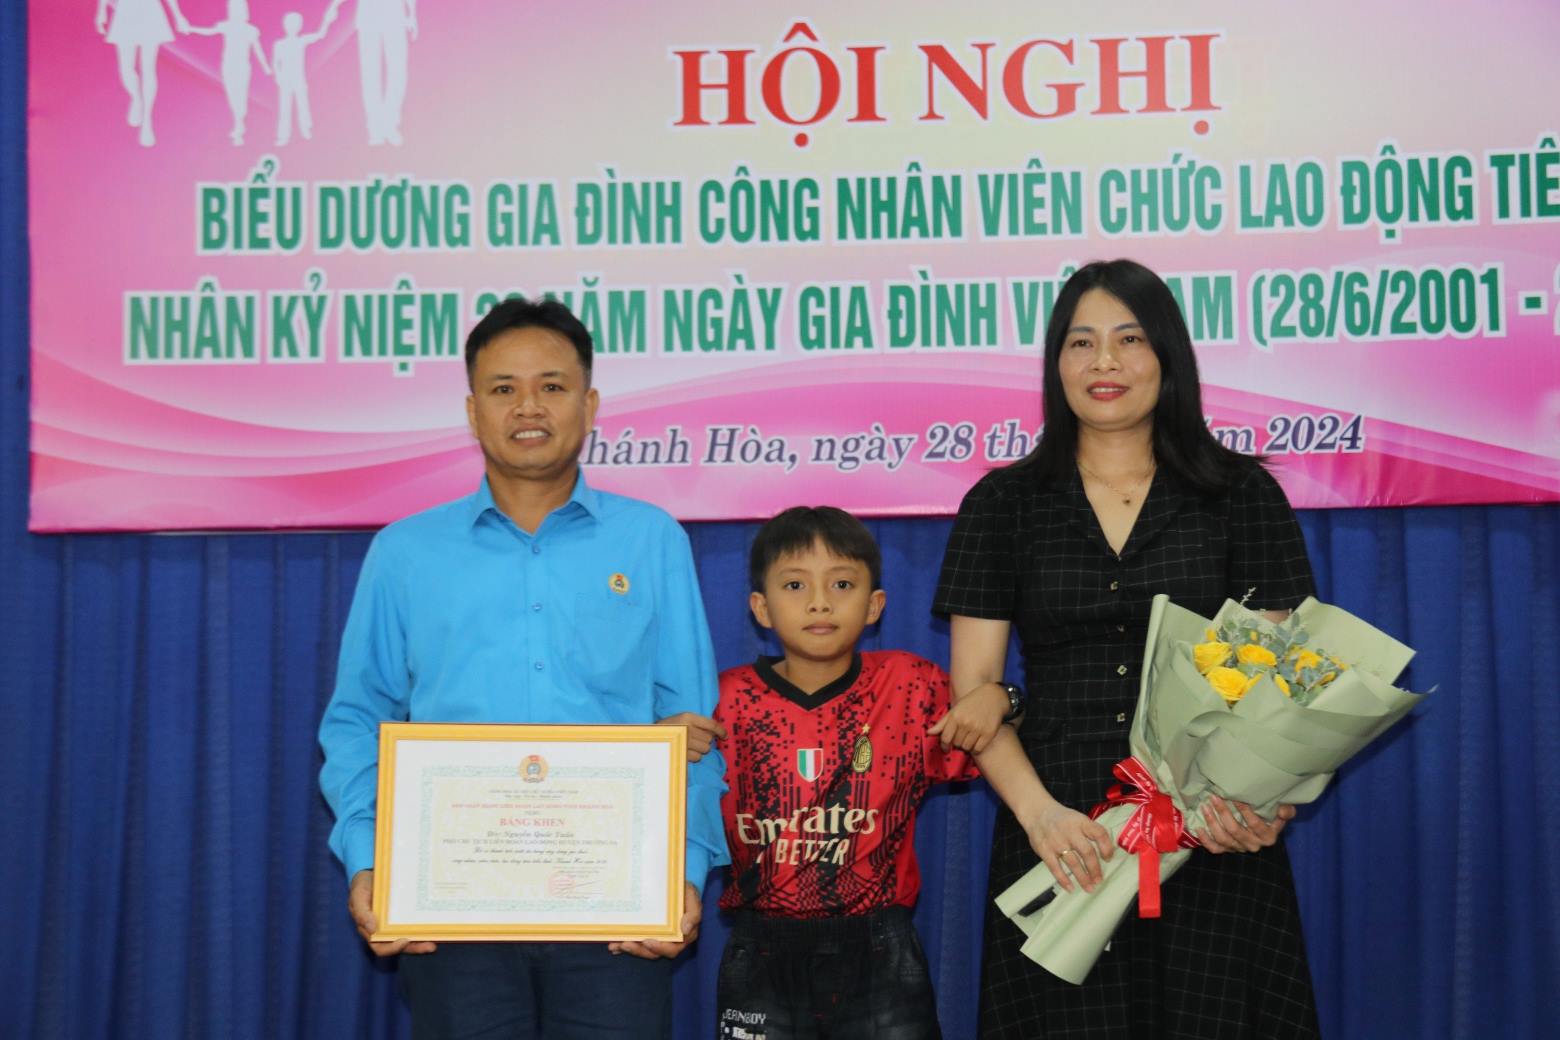 Gia đình đại tá Nguyễn Quốc Tuấn chỉ biết động viên nhau xây dựng gia đình, nỗ lực công tác qua điện thoại vì điều kiện công tác xa nhà. Ảnh: Phương Linh